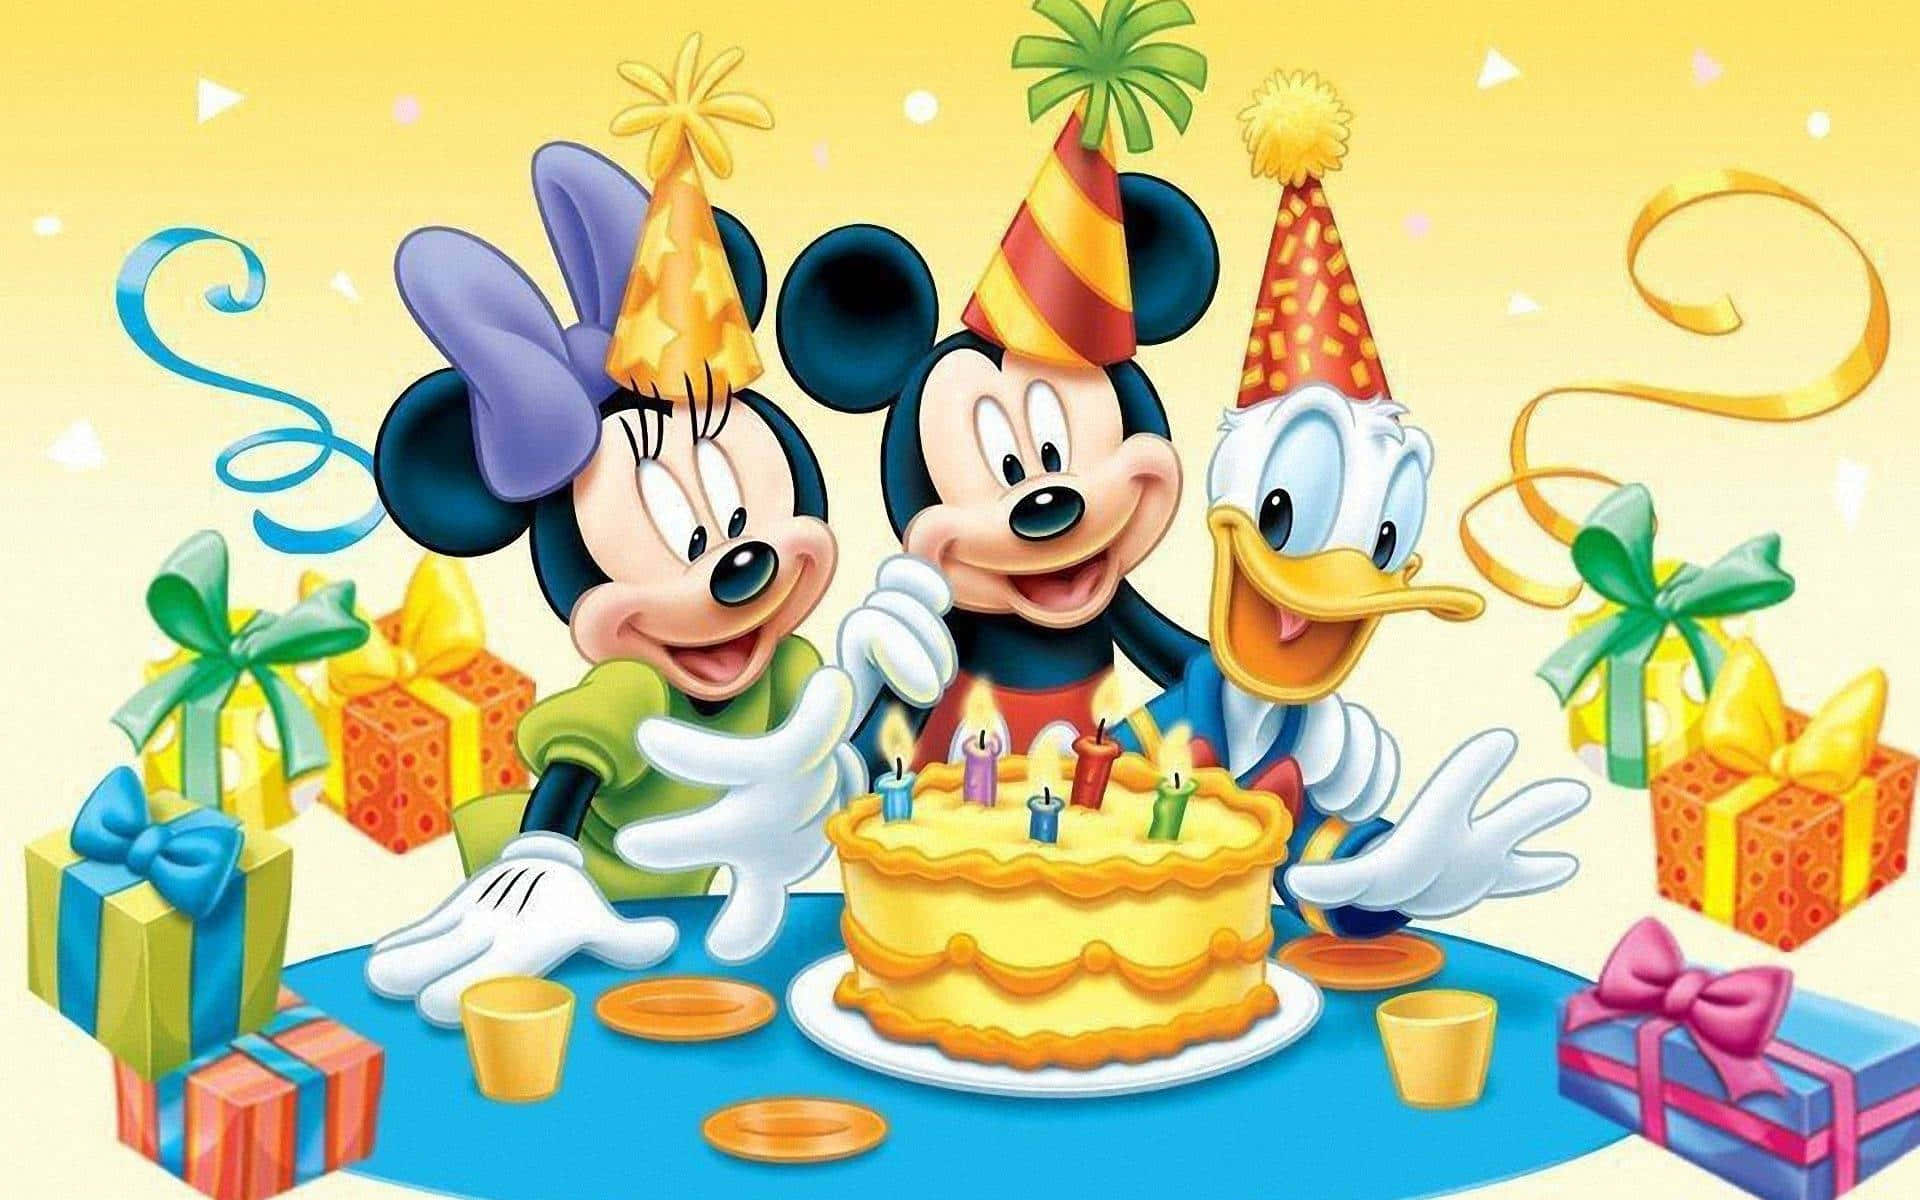 Únetea Mickey, Donald Y Goofy En Sus Aventuras En El Mágico Clubhouse De Mickey Mouse.